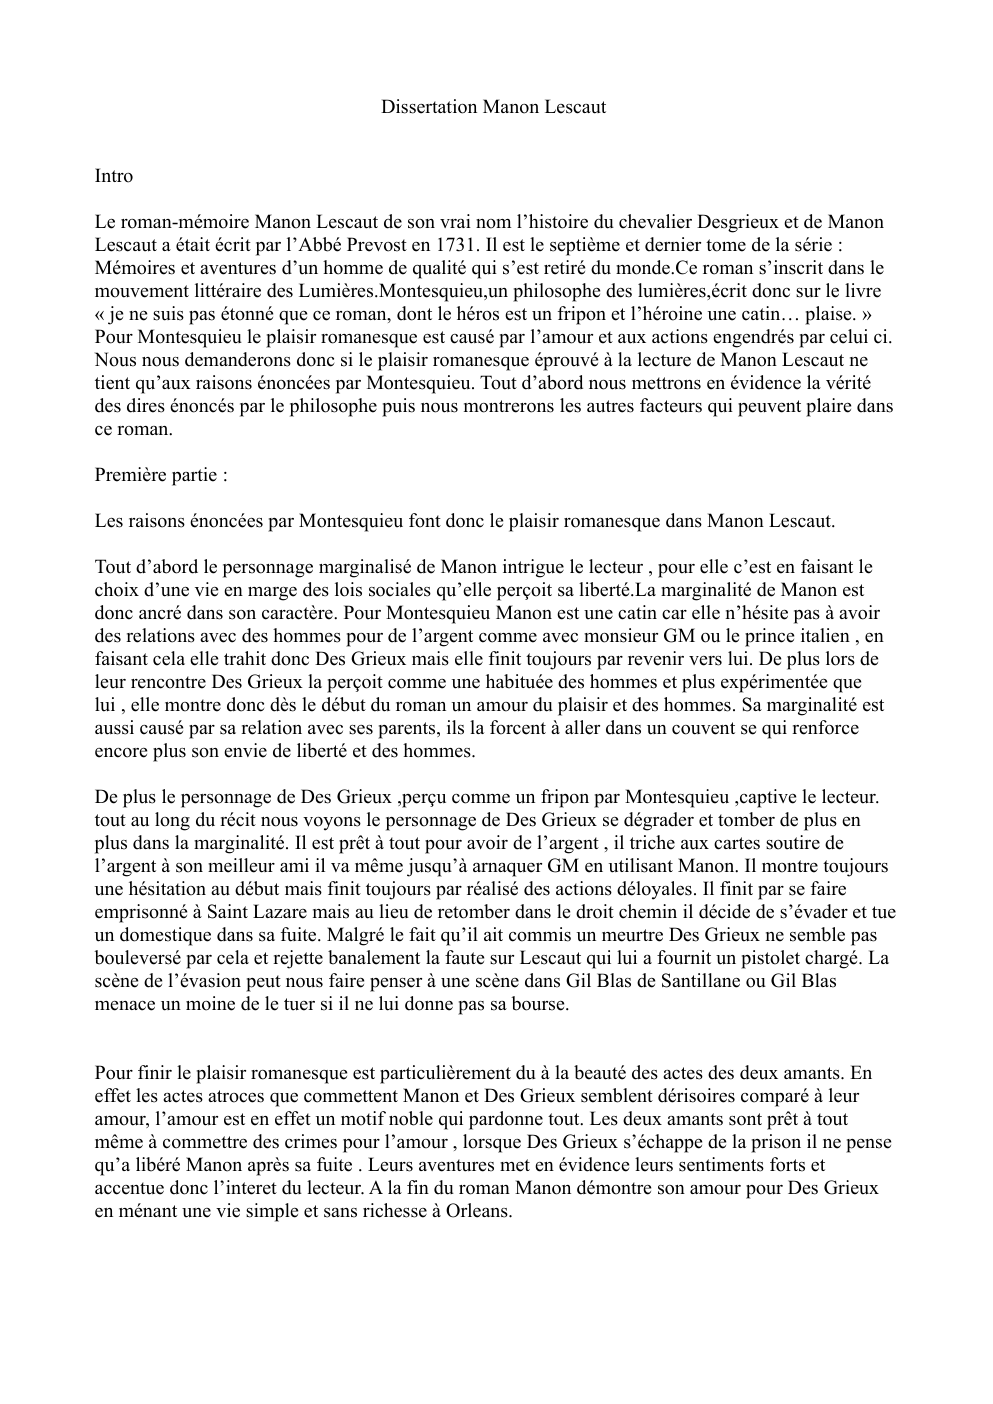 Prévisualisation du document dissert manon lescaut vs Montesquieu